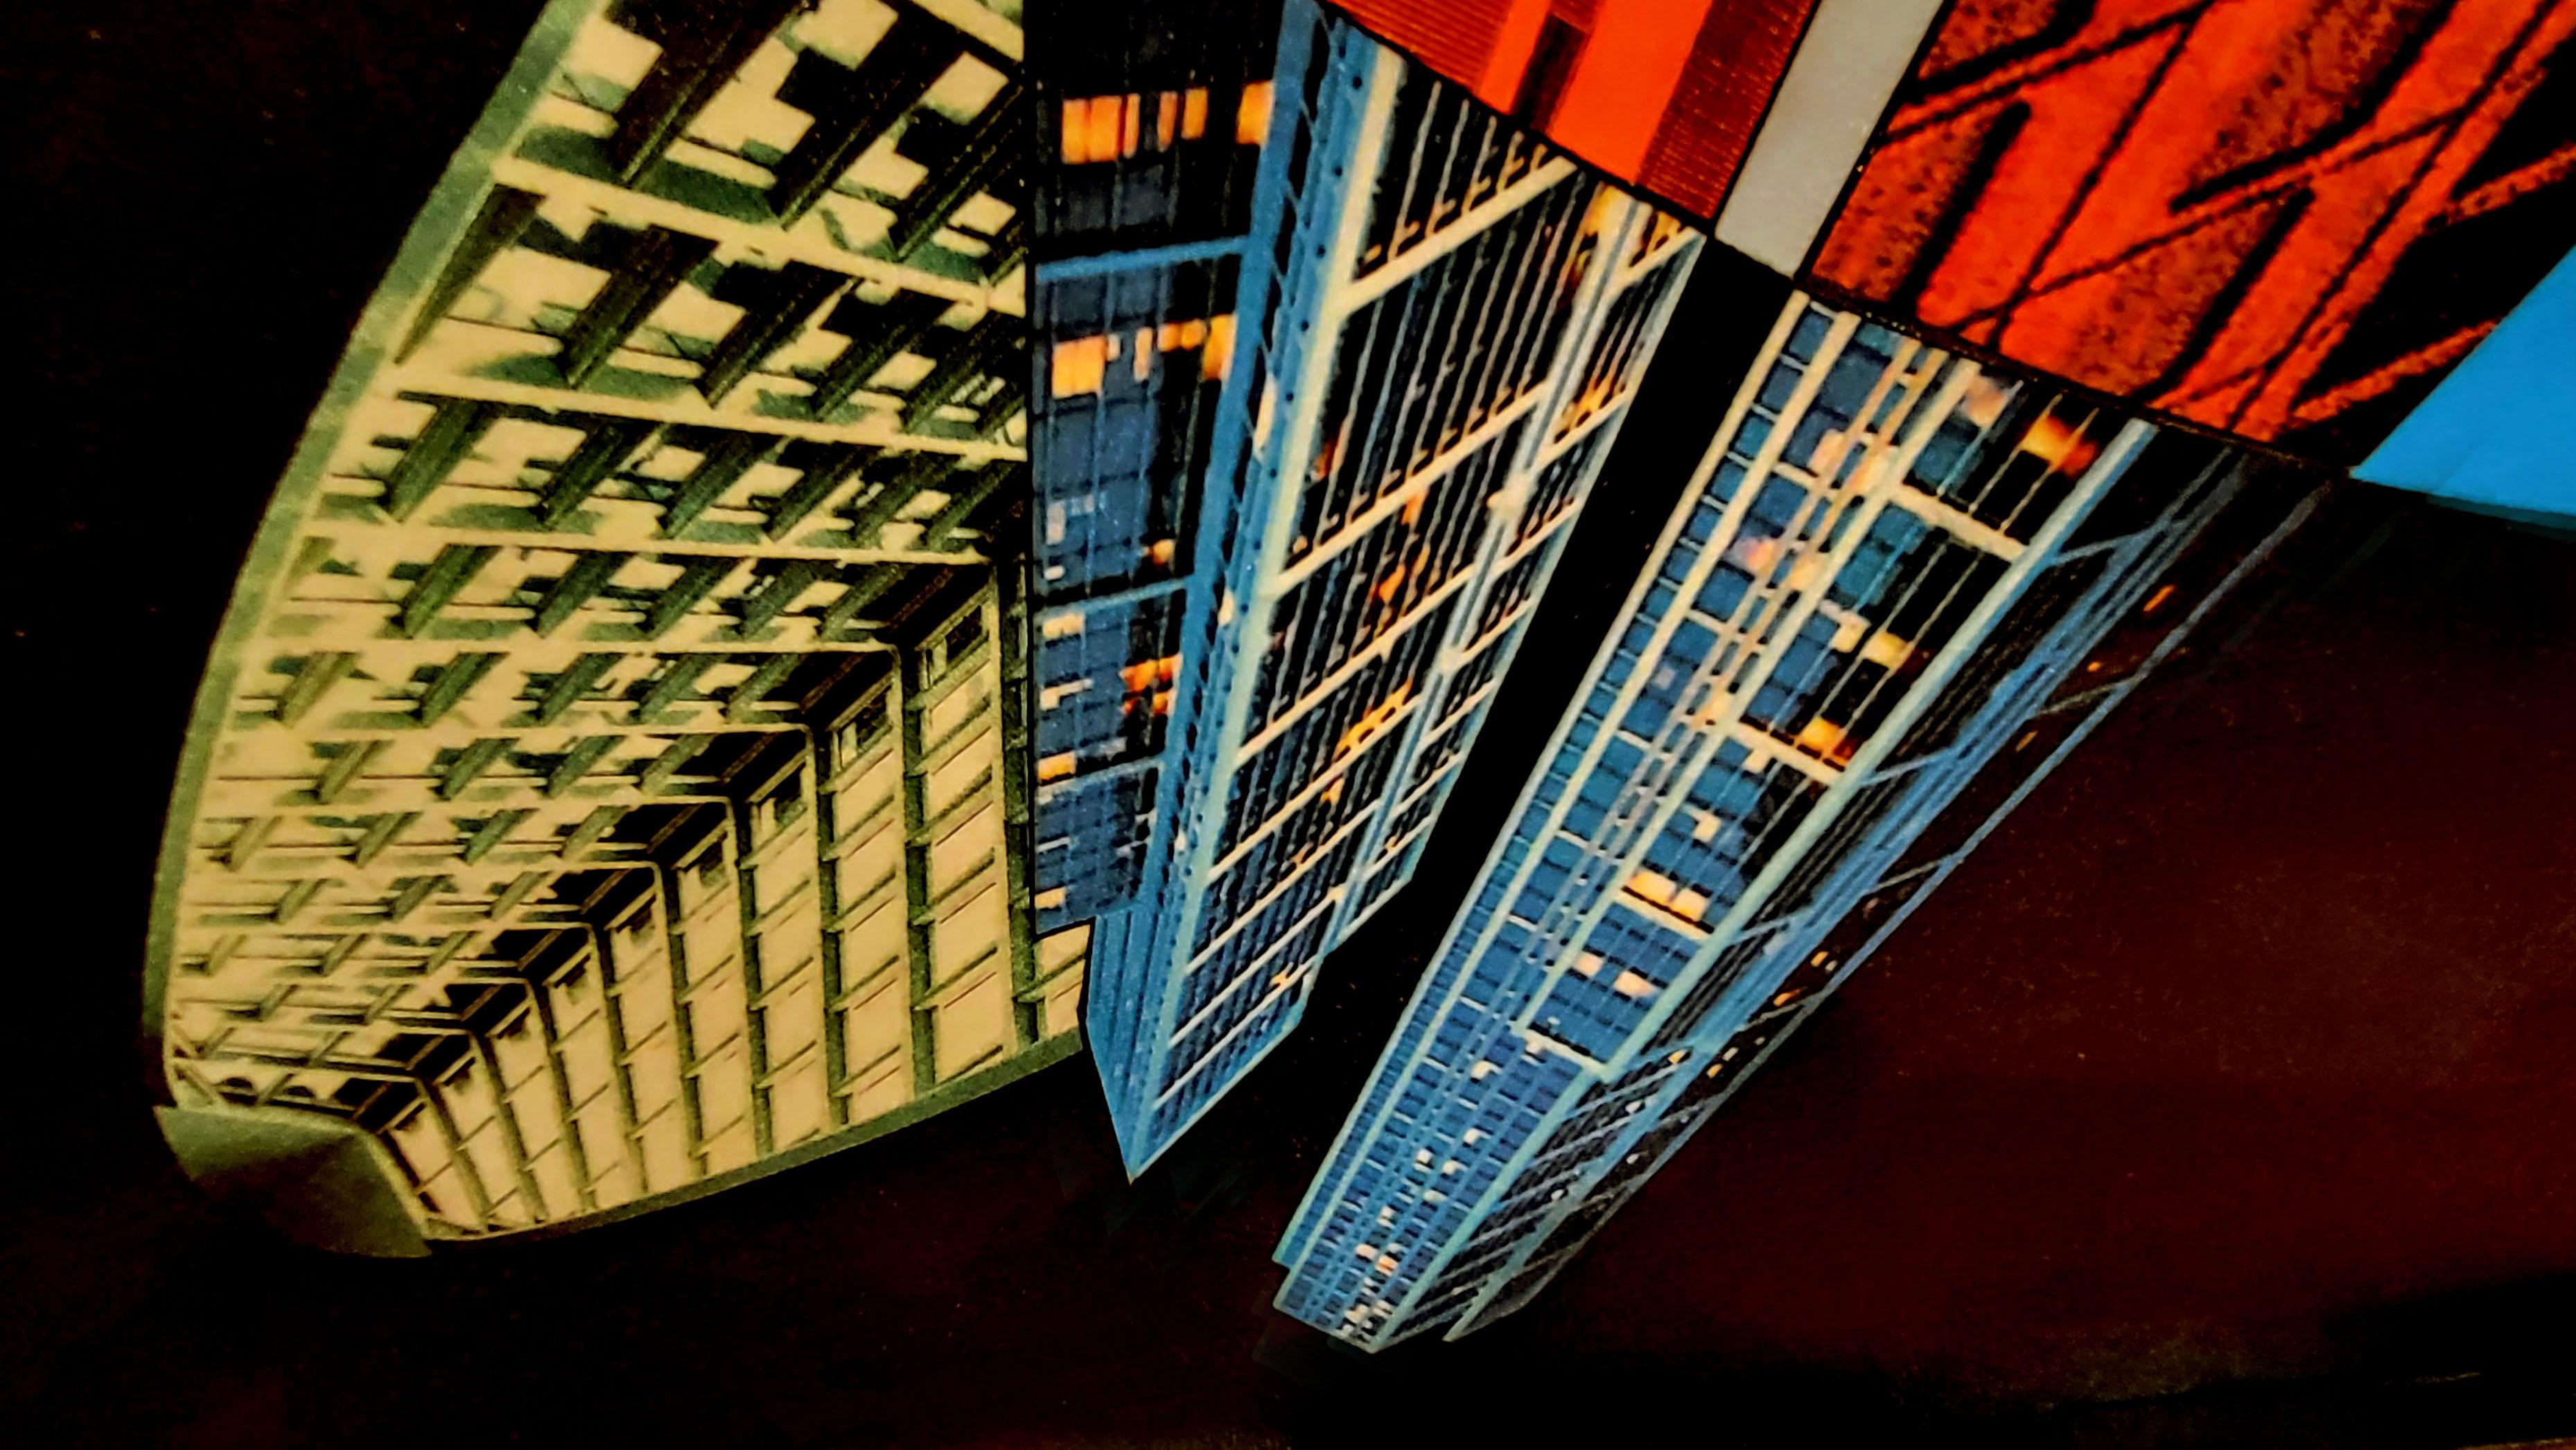 Ciberurban in „Tondo“. Architektonische, farbenfrohe Landschaft, inspiriert von der Bauhaus-Schule.
Acrylfarbe, Mischtechnik auf Platte. 2021
Abmessungen in cm: 132 x 129 x 4 cm.
In Zoll: 51.97 